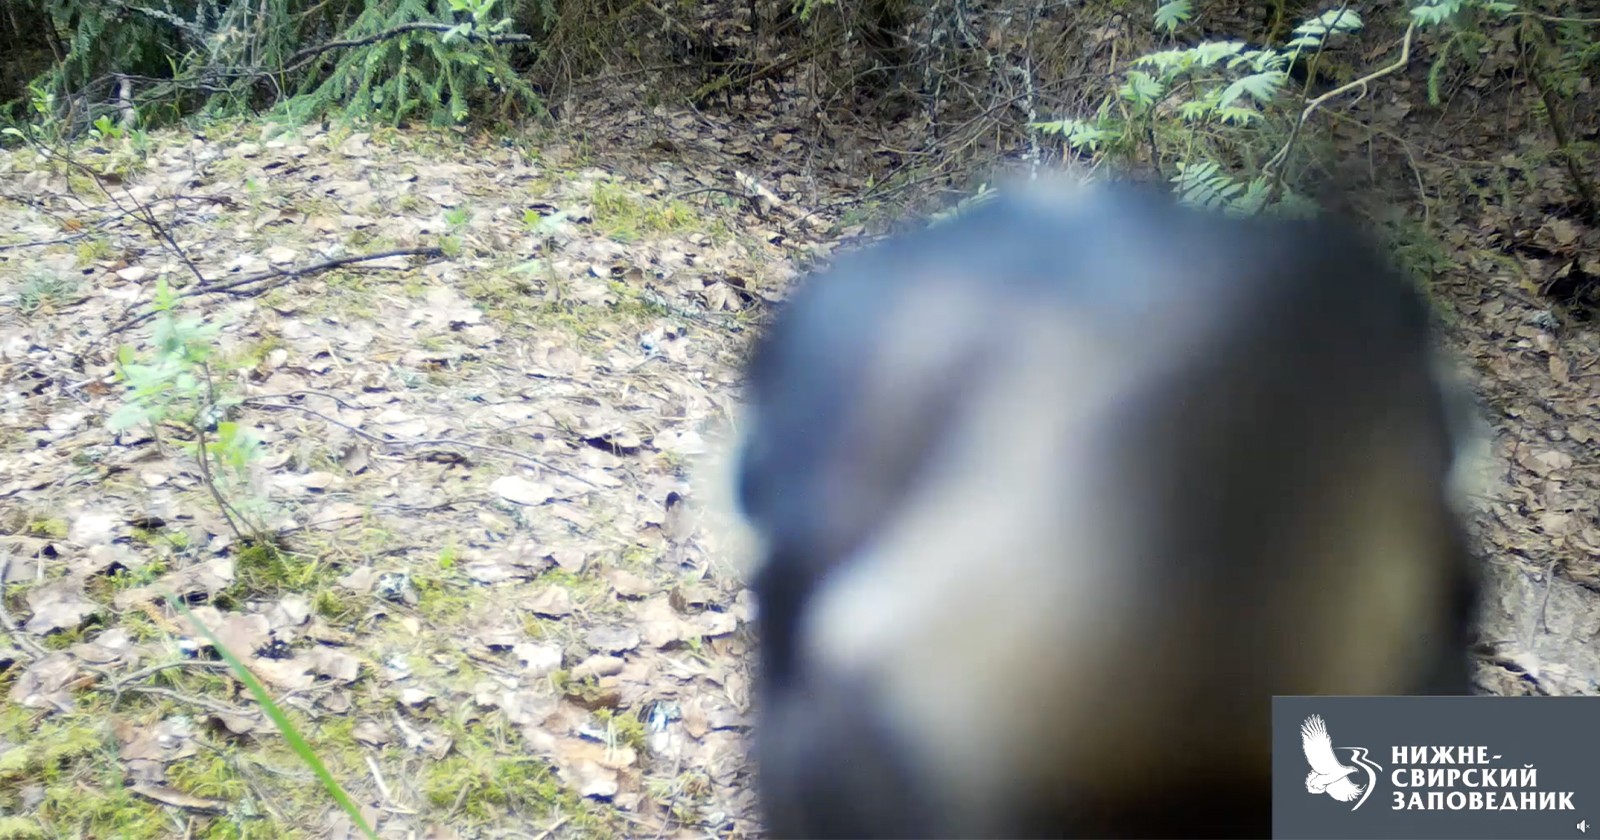 یک دارکوب تماشا کنید که به طور روشنی دوربین حیات وحش را خراب می کند